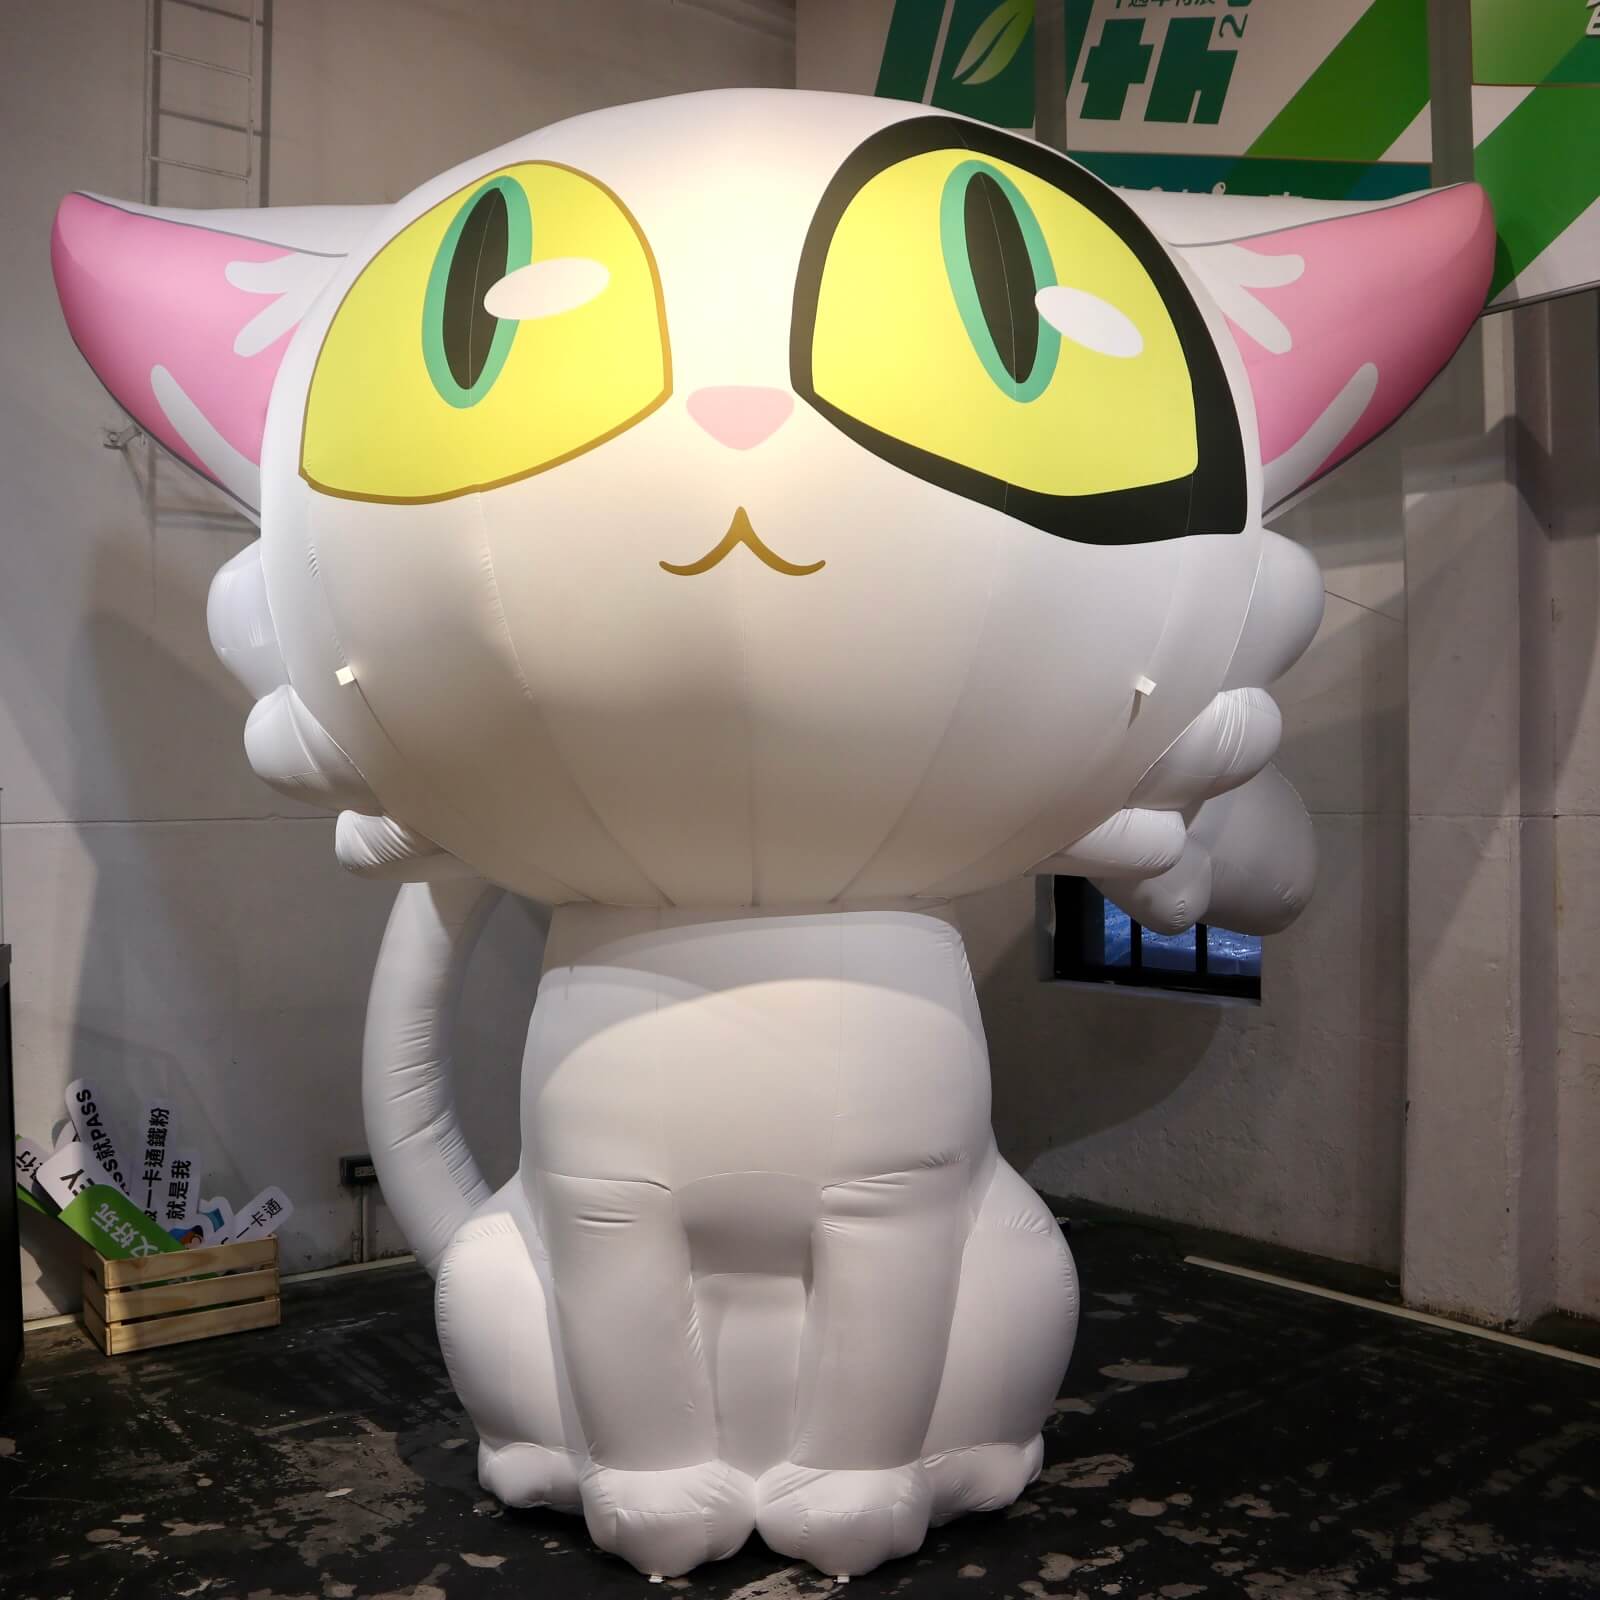 一卡通特別為台北場精心規劃了新海誠知名動畫電影《鈴芽之旅-貓大臣》巨大化氣偶展出，也預告即將發行《貓大臣》相關 3D 票卡